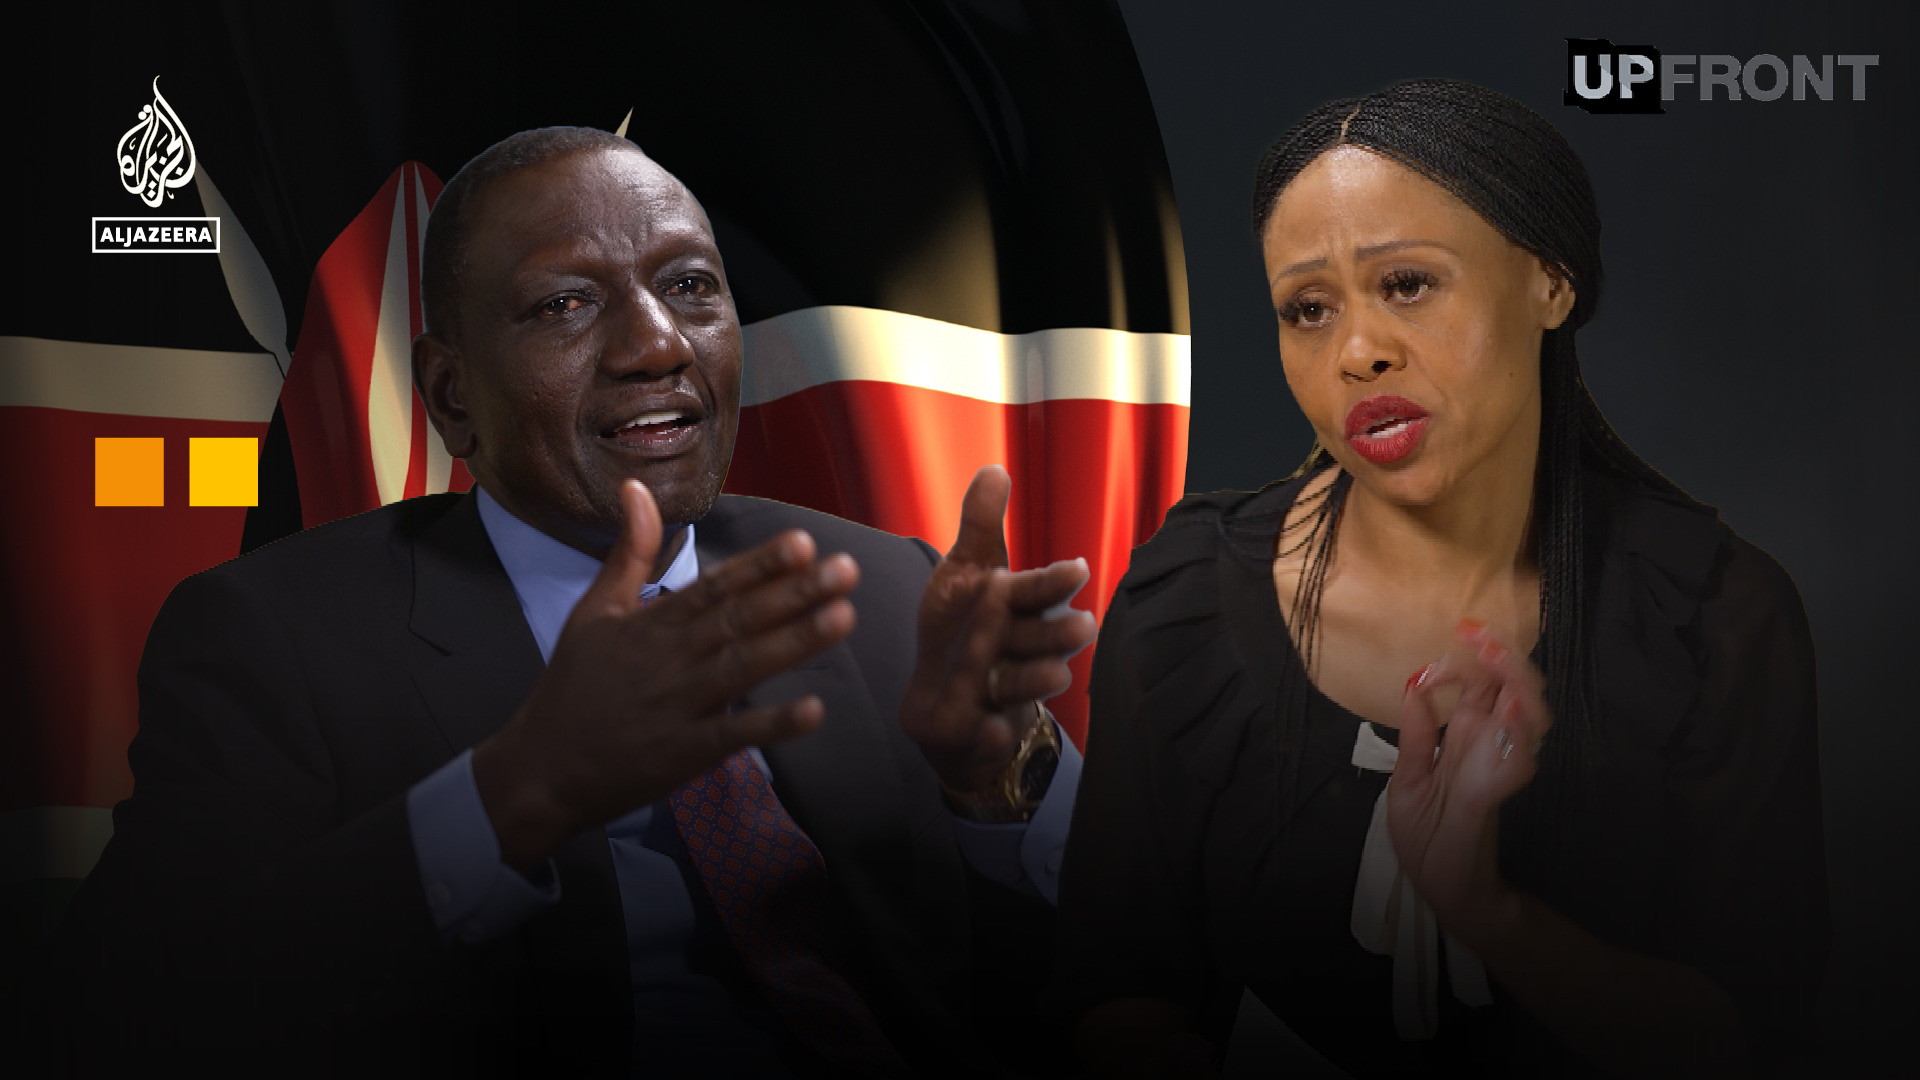 مقابلة الرئيس ويليام روتو: ما هو دور كينيا على الساحة العالمية؟  |  عرض تلفزيوني